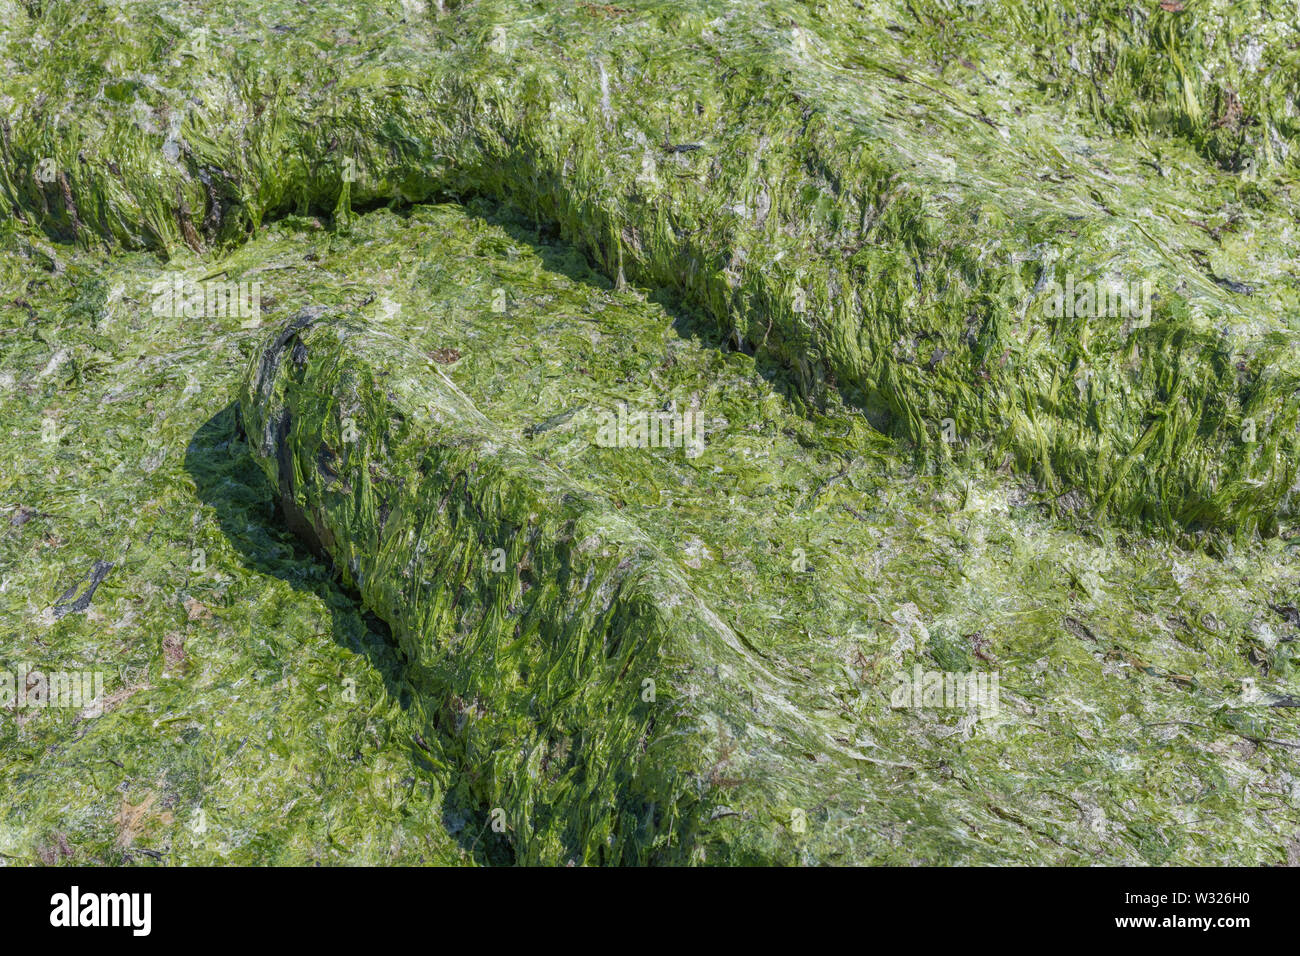 Brin d'algue verte de laitue de mer / Ulva lactuca échoués sur une plage, et déposés à la dérive. Rejetés par la métaphore, concept échoués. Banque D'Images